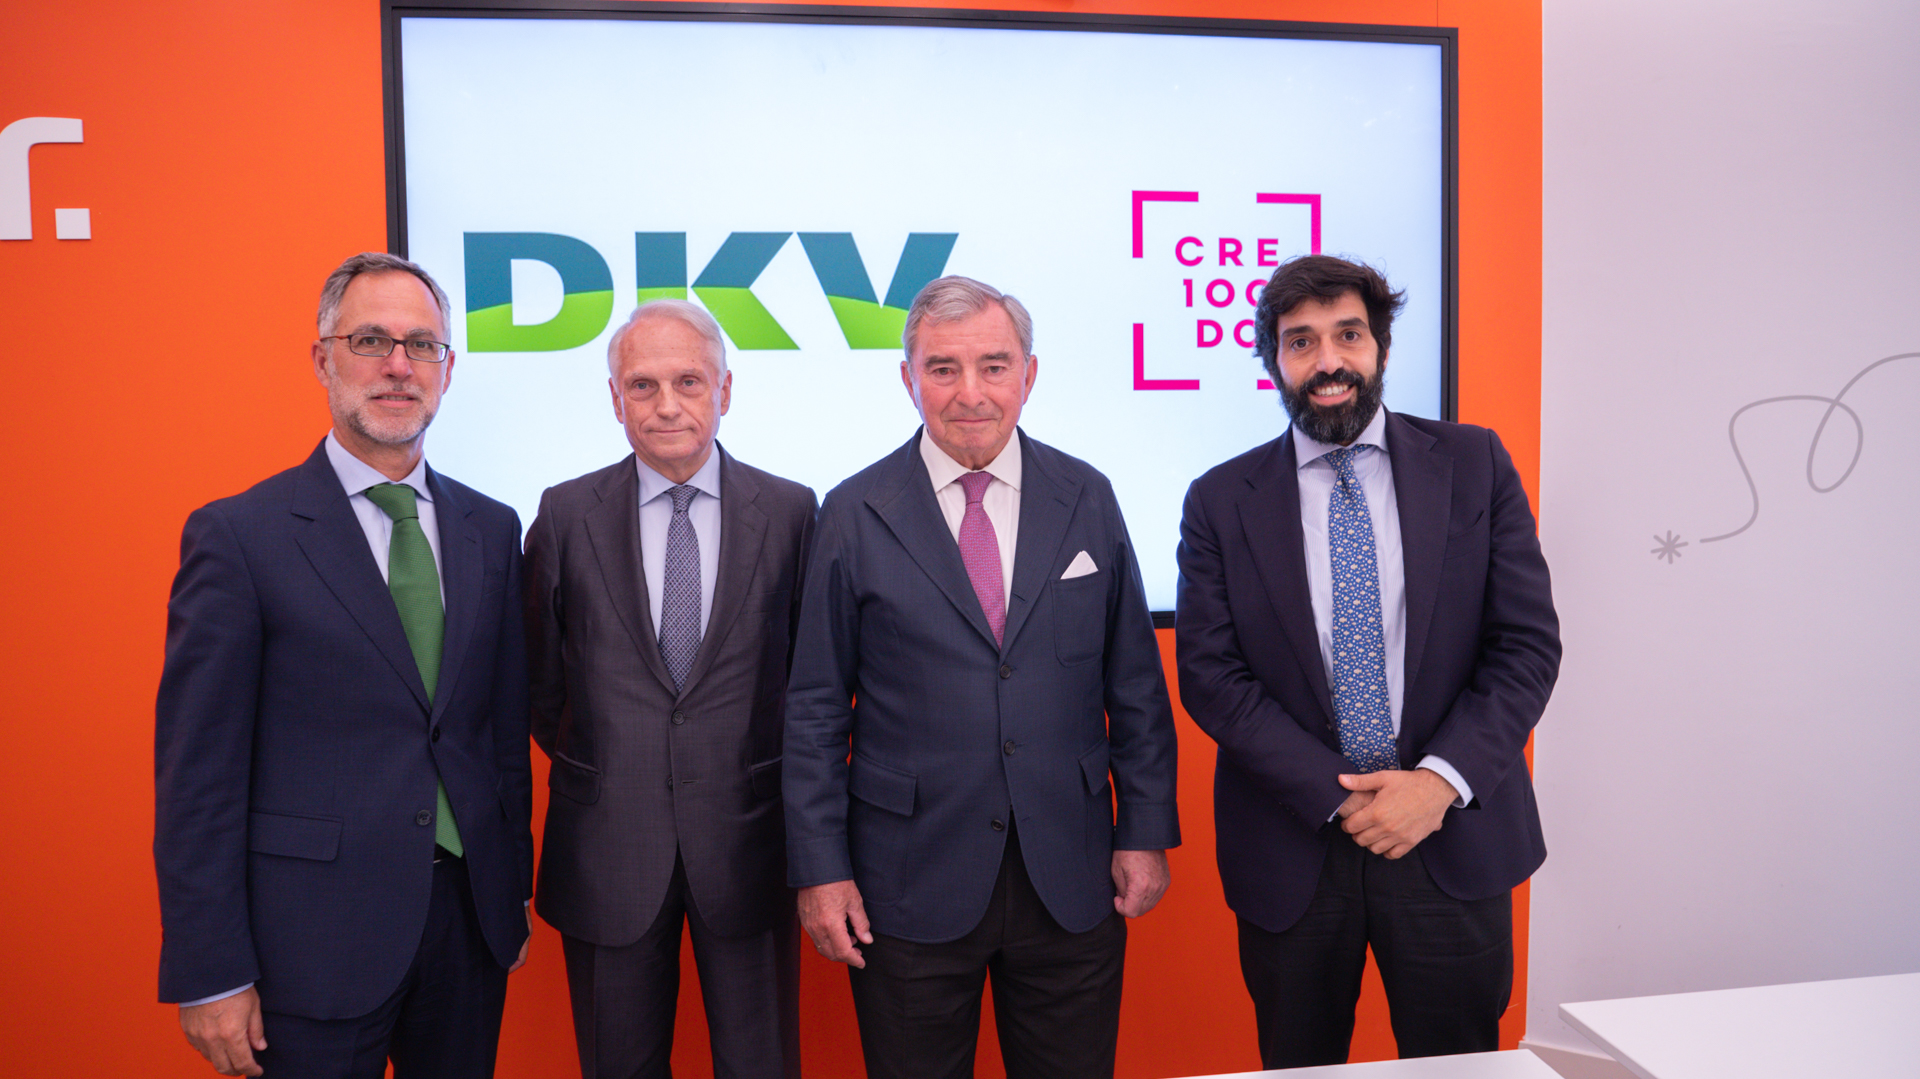 DKV Seguros entra a formar parte de Fundación CRE100DO para impulsar el crecimiento de las Empresas de Tamaño Intermedio españolas (ETIs)